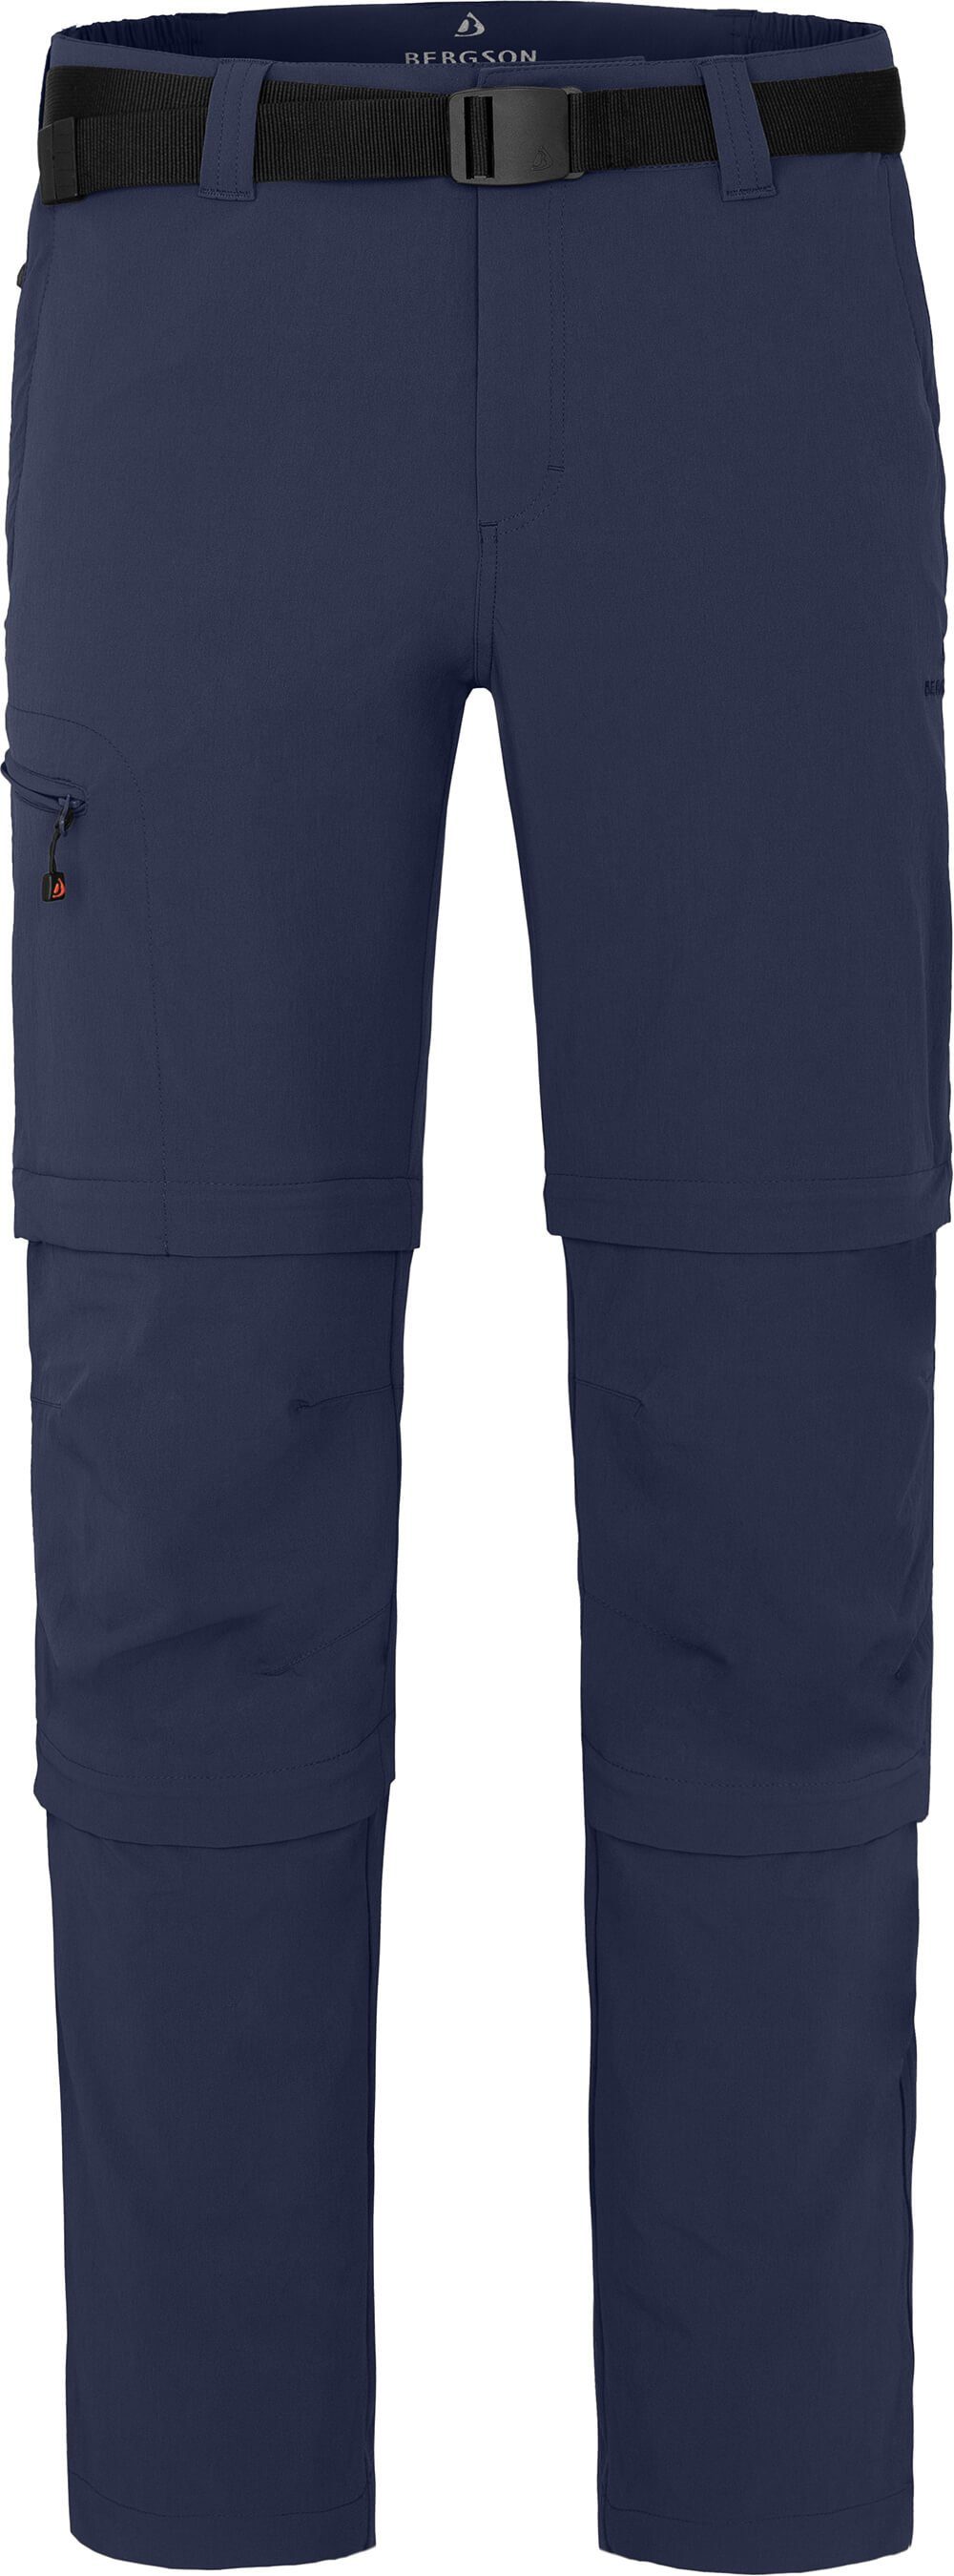 Bergson Zip-off-Hose OSSA Doppel Zipp-Off vielseitig, blau peacoat Wanderhose, Langgrößen, pflegeleicht, Herren